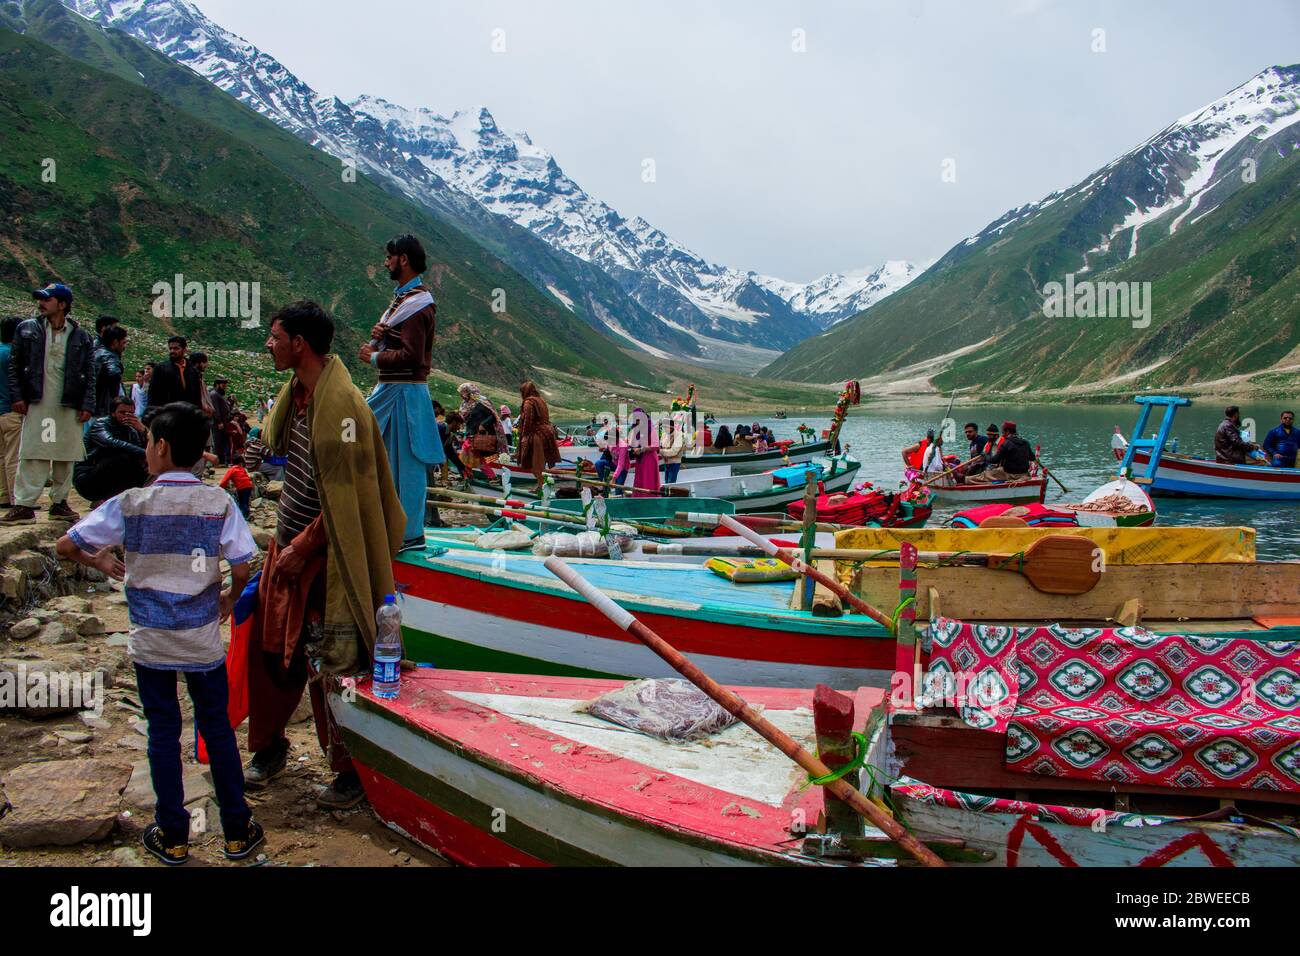 Ships For Tourists At Saif ul Maluk Lake, Naran Valley, Khyber Pakhtunkhua, Pakistan 6/26/2018 Stock Photo